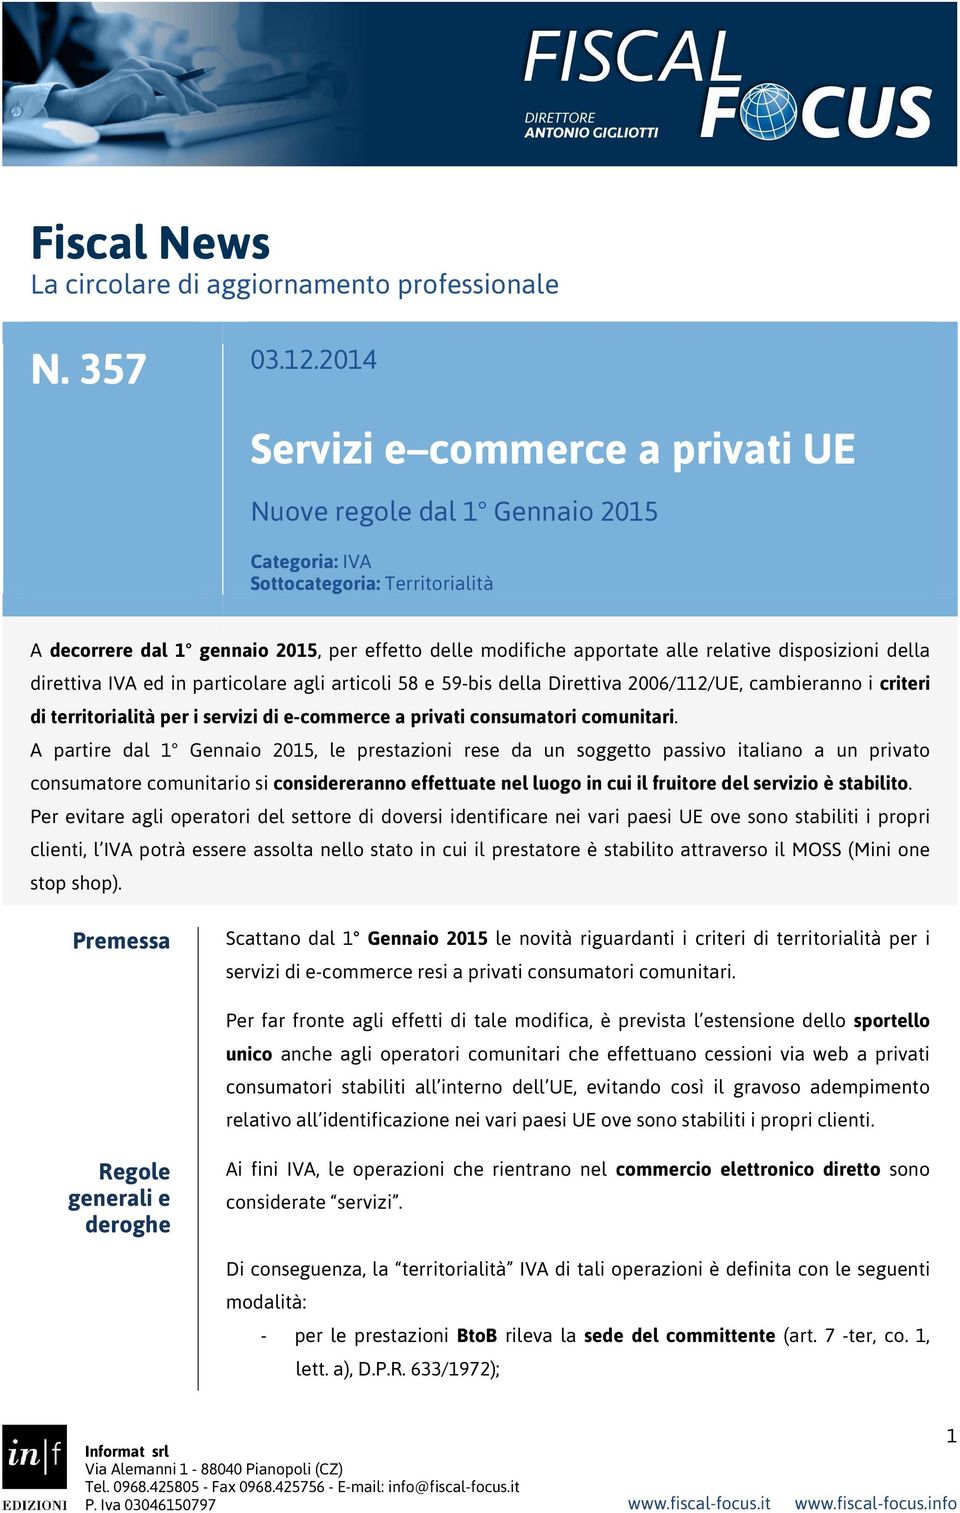 disposizioni della direttiva IVA ed in particolare agli articoli 58 e 59-bis della Direttiva 2006/112/UE, cambieranno i criteri di territorialità per i servizi di e-commerce a privati consumatori